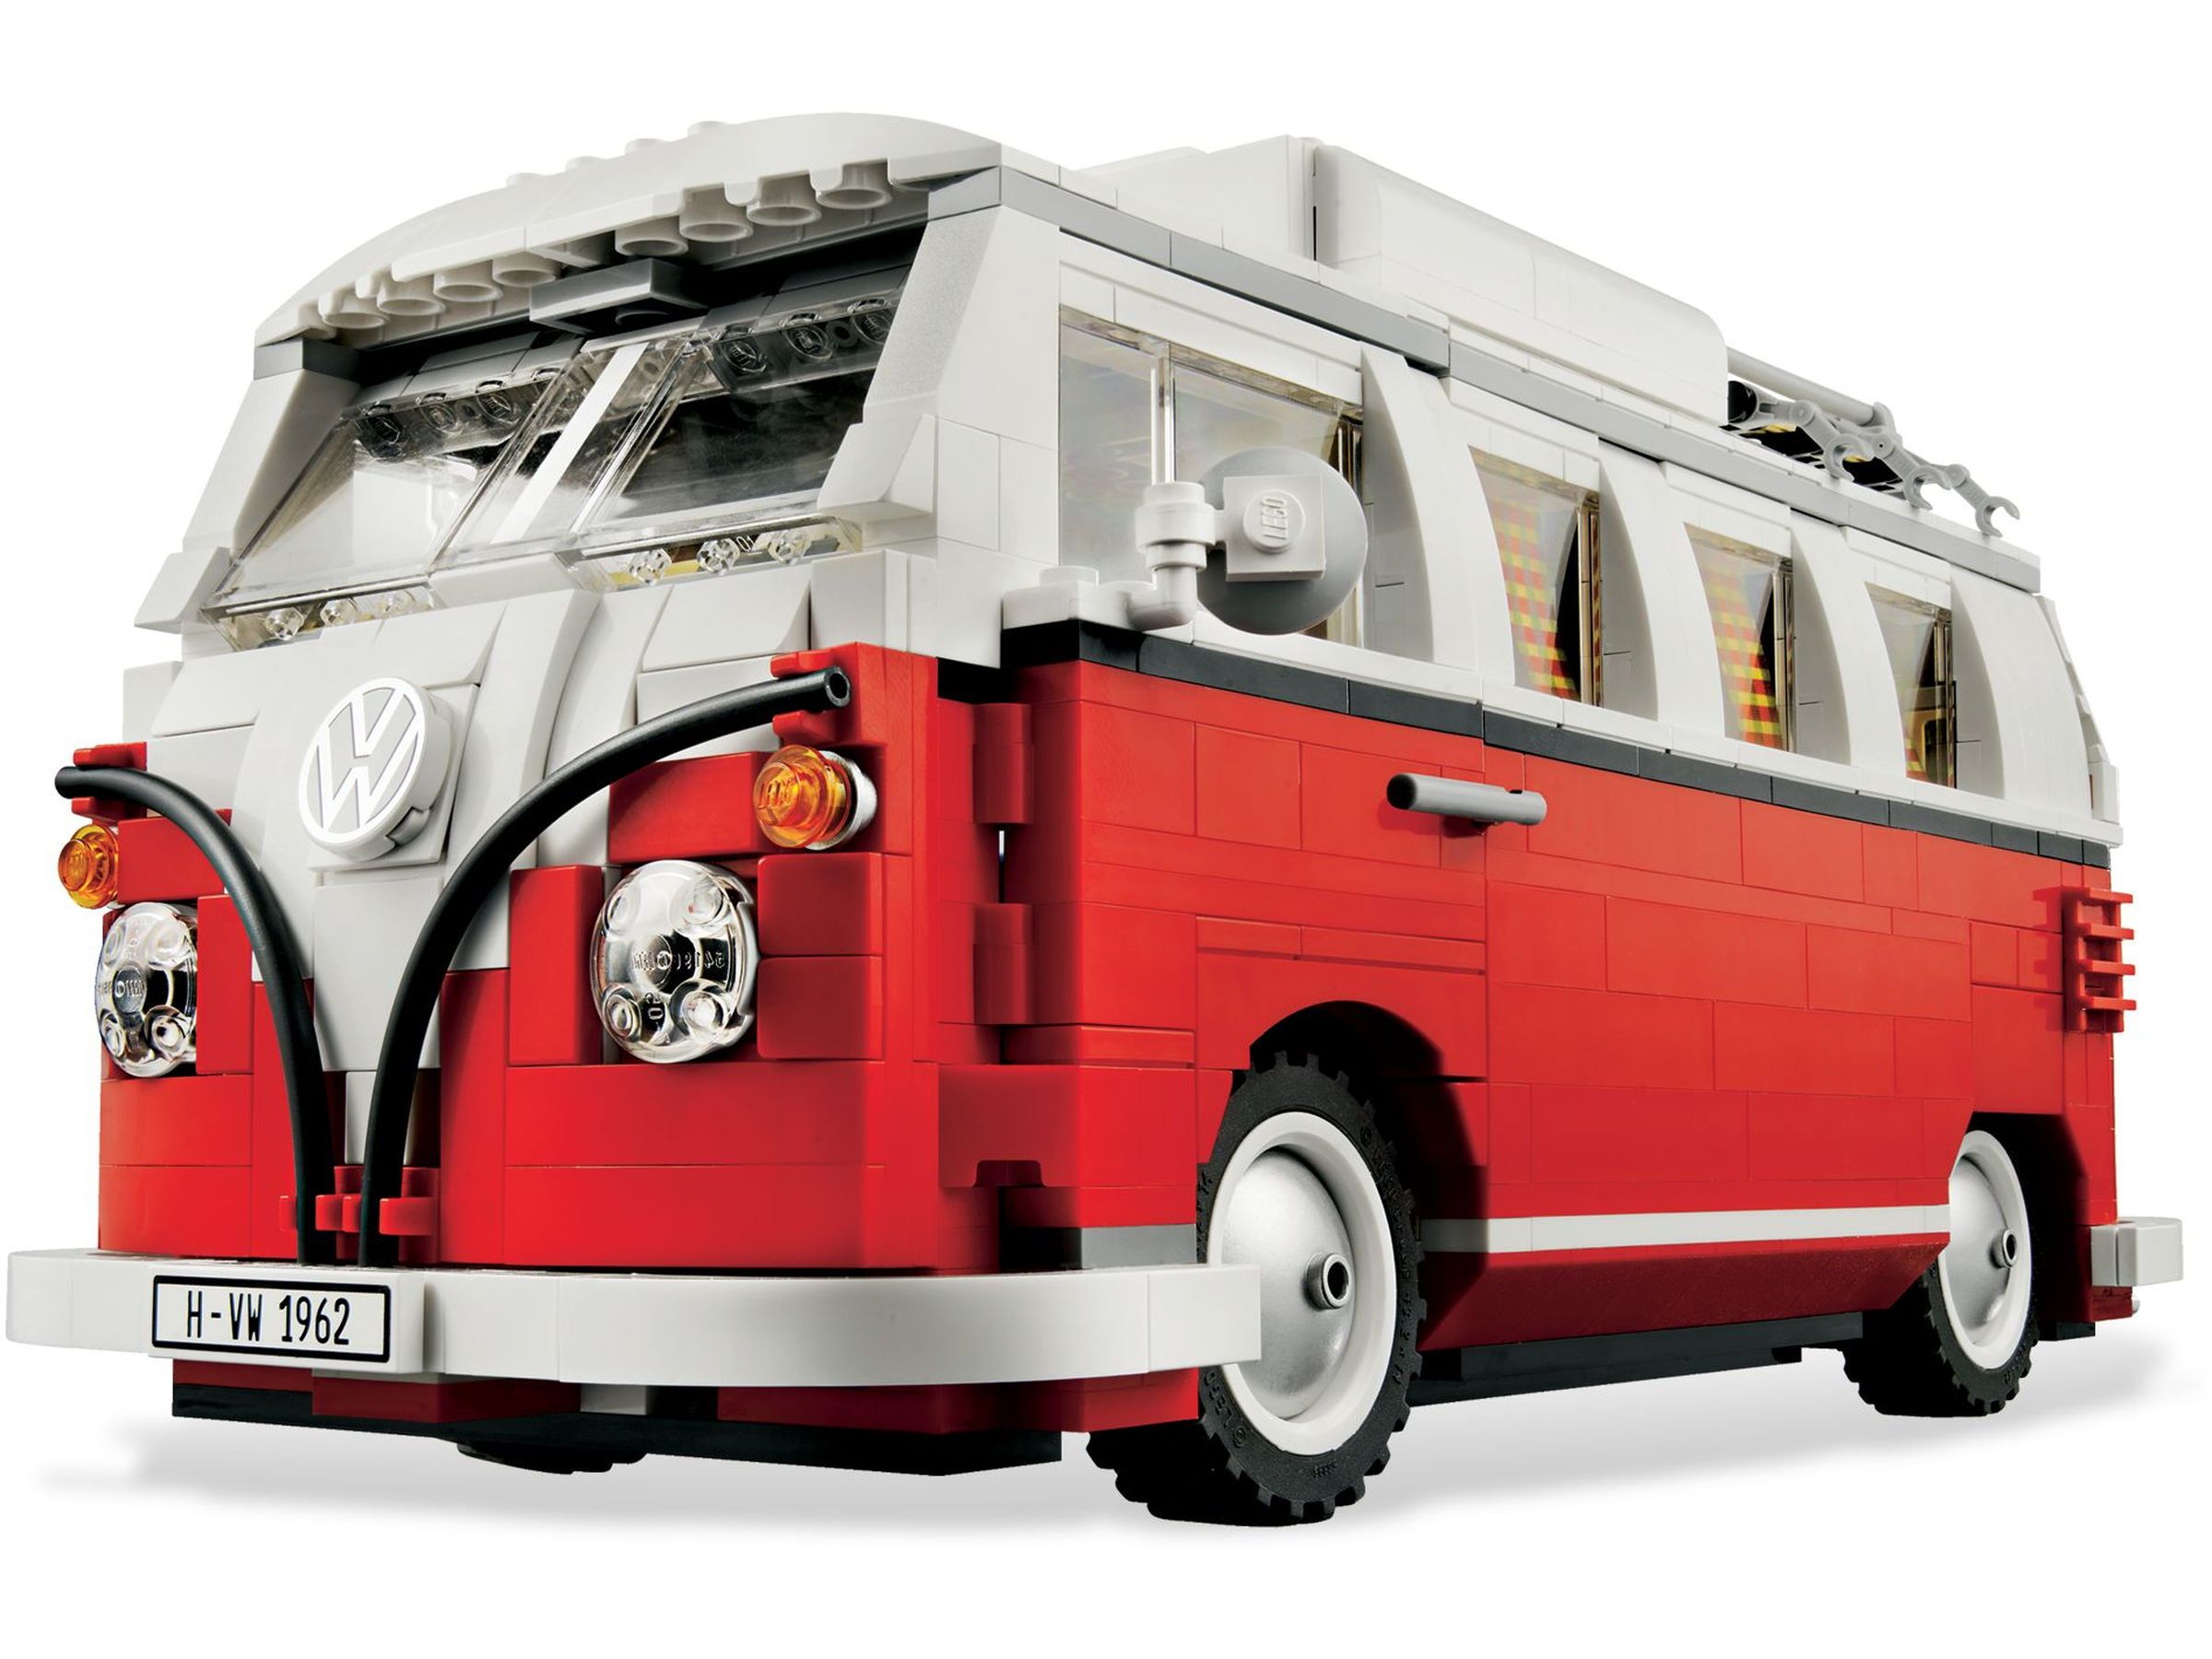 LEGO Creator Expert Volkswagen T1 Camper huren